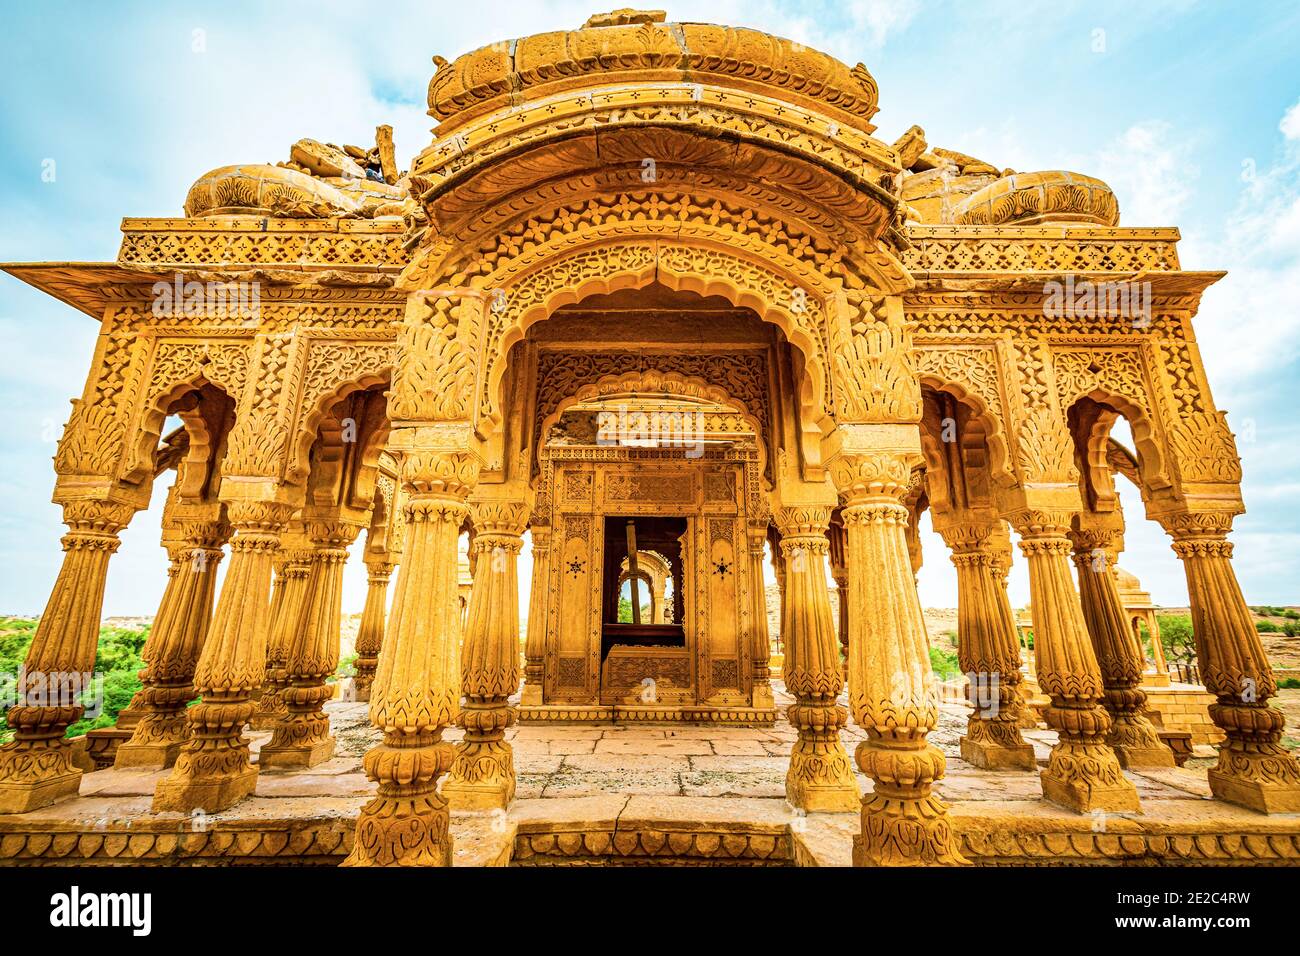 Particolare di un padiglione reale chhatri cenotafh nel complesso Bada Bagh. Foto scattata il 12 agosto 2018 vicino a Jaisalmer città dello stato del Rajasthan, India Foto Stock